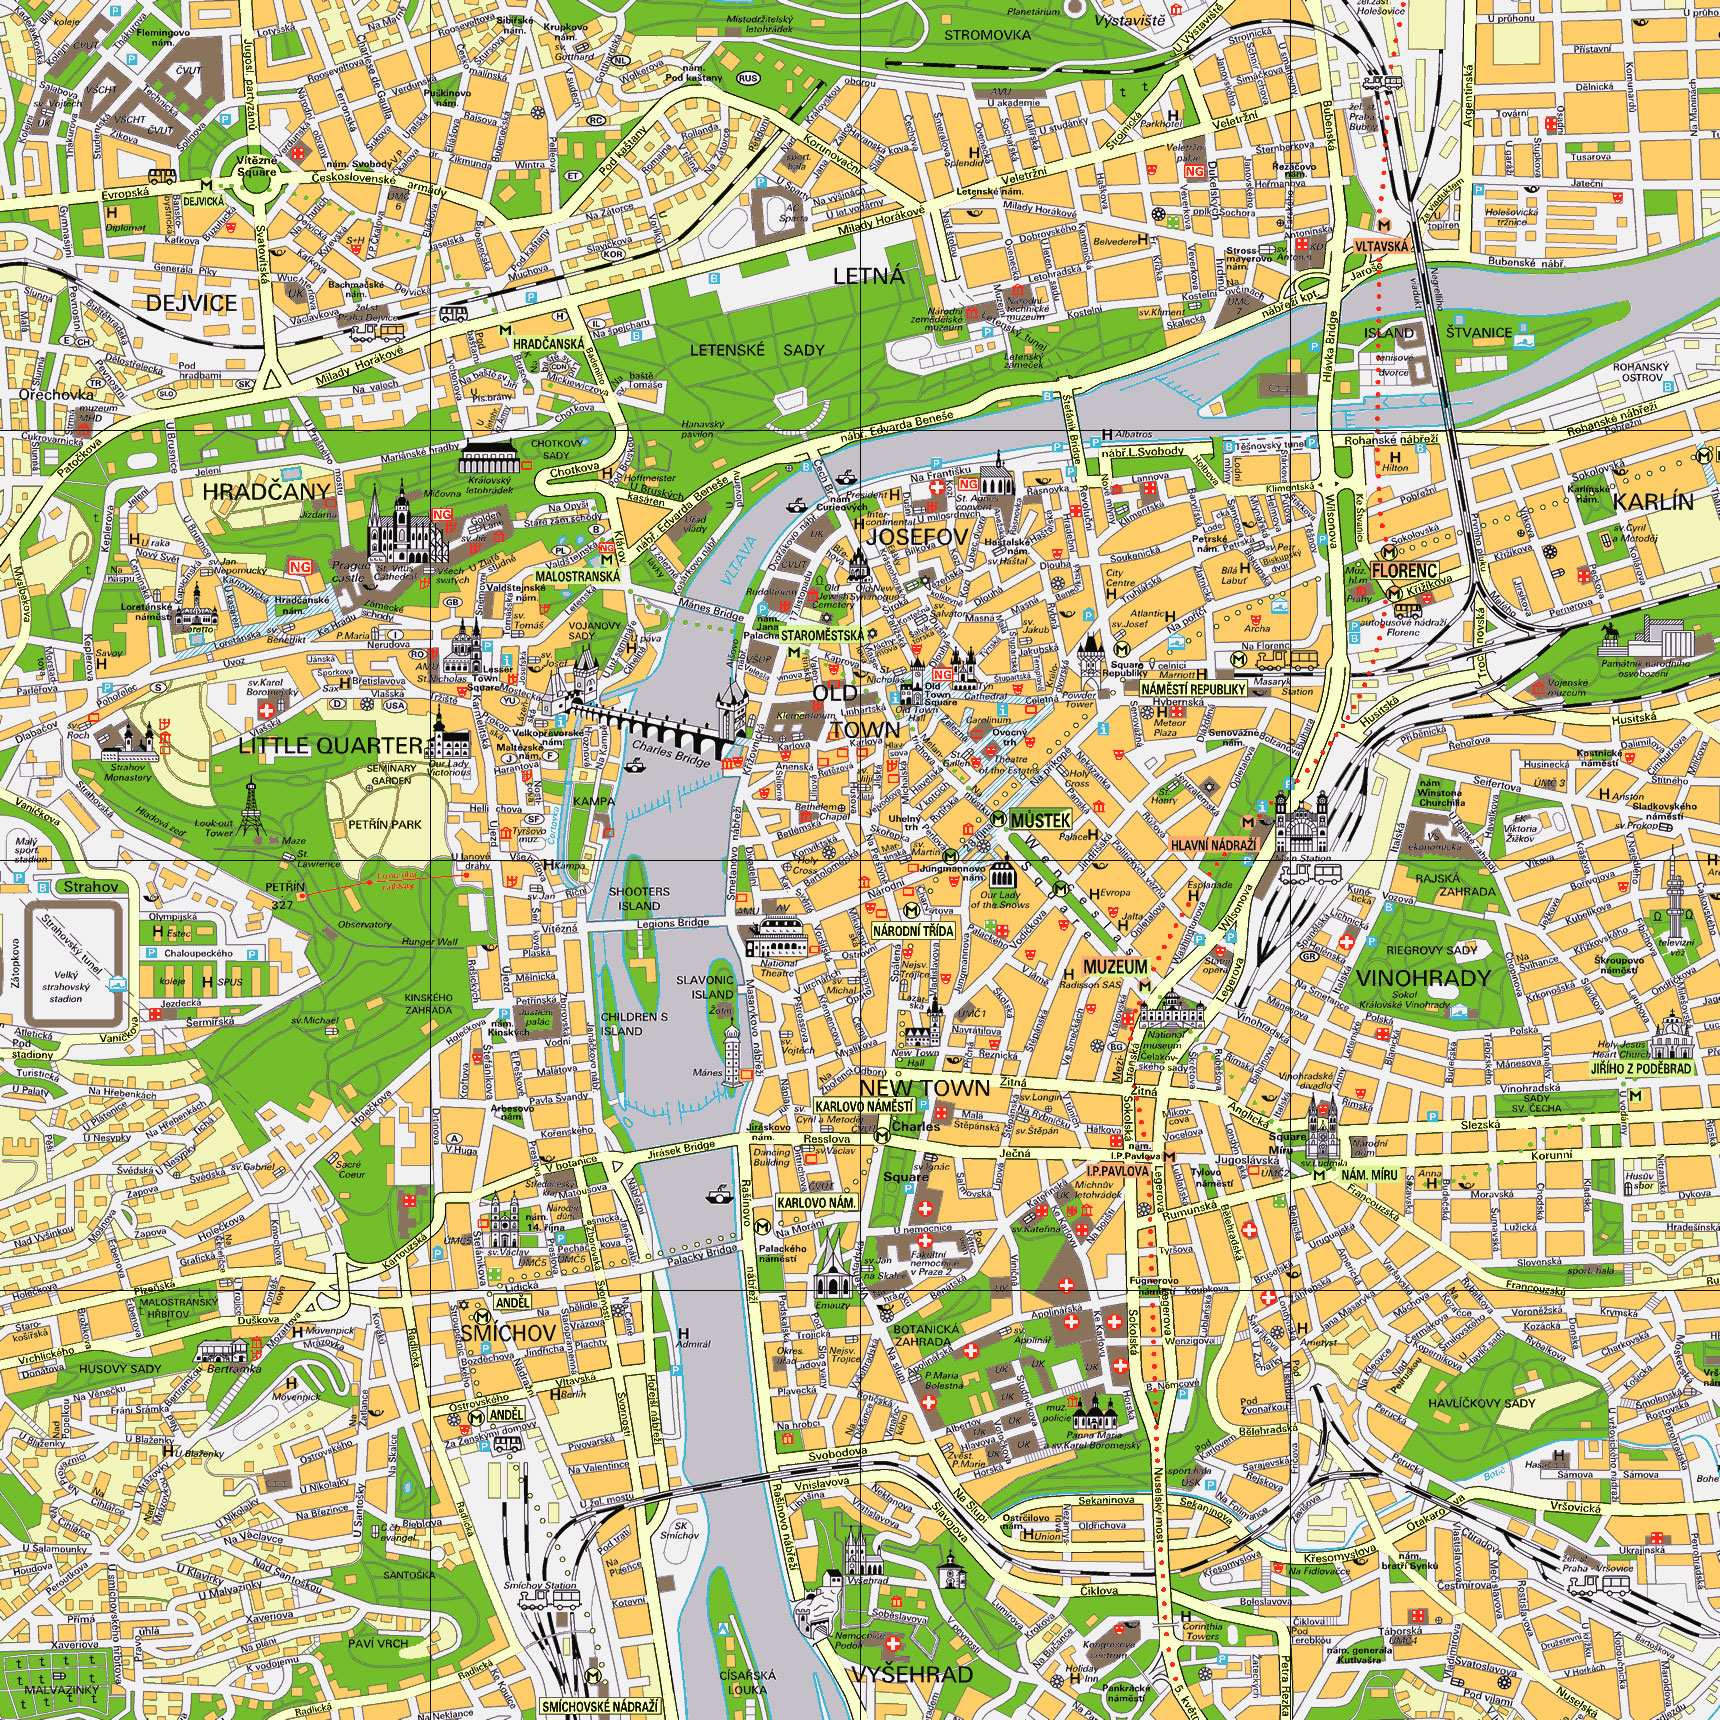 Stadtplan von Prag | Detaillierte gedruckte Karten von Prag